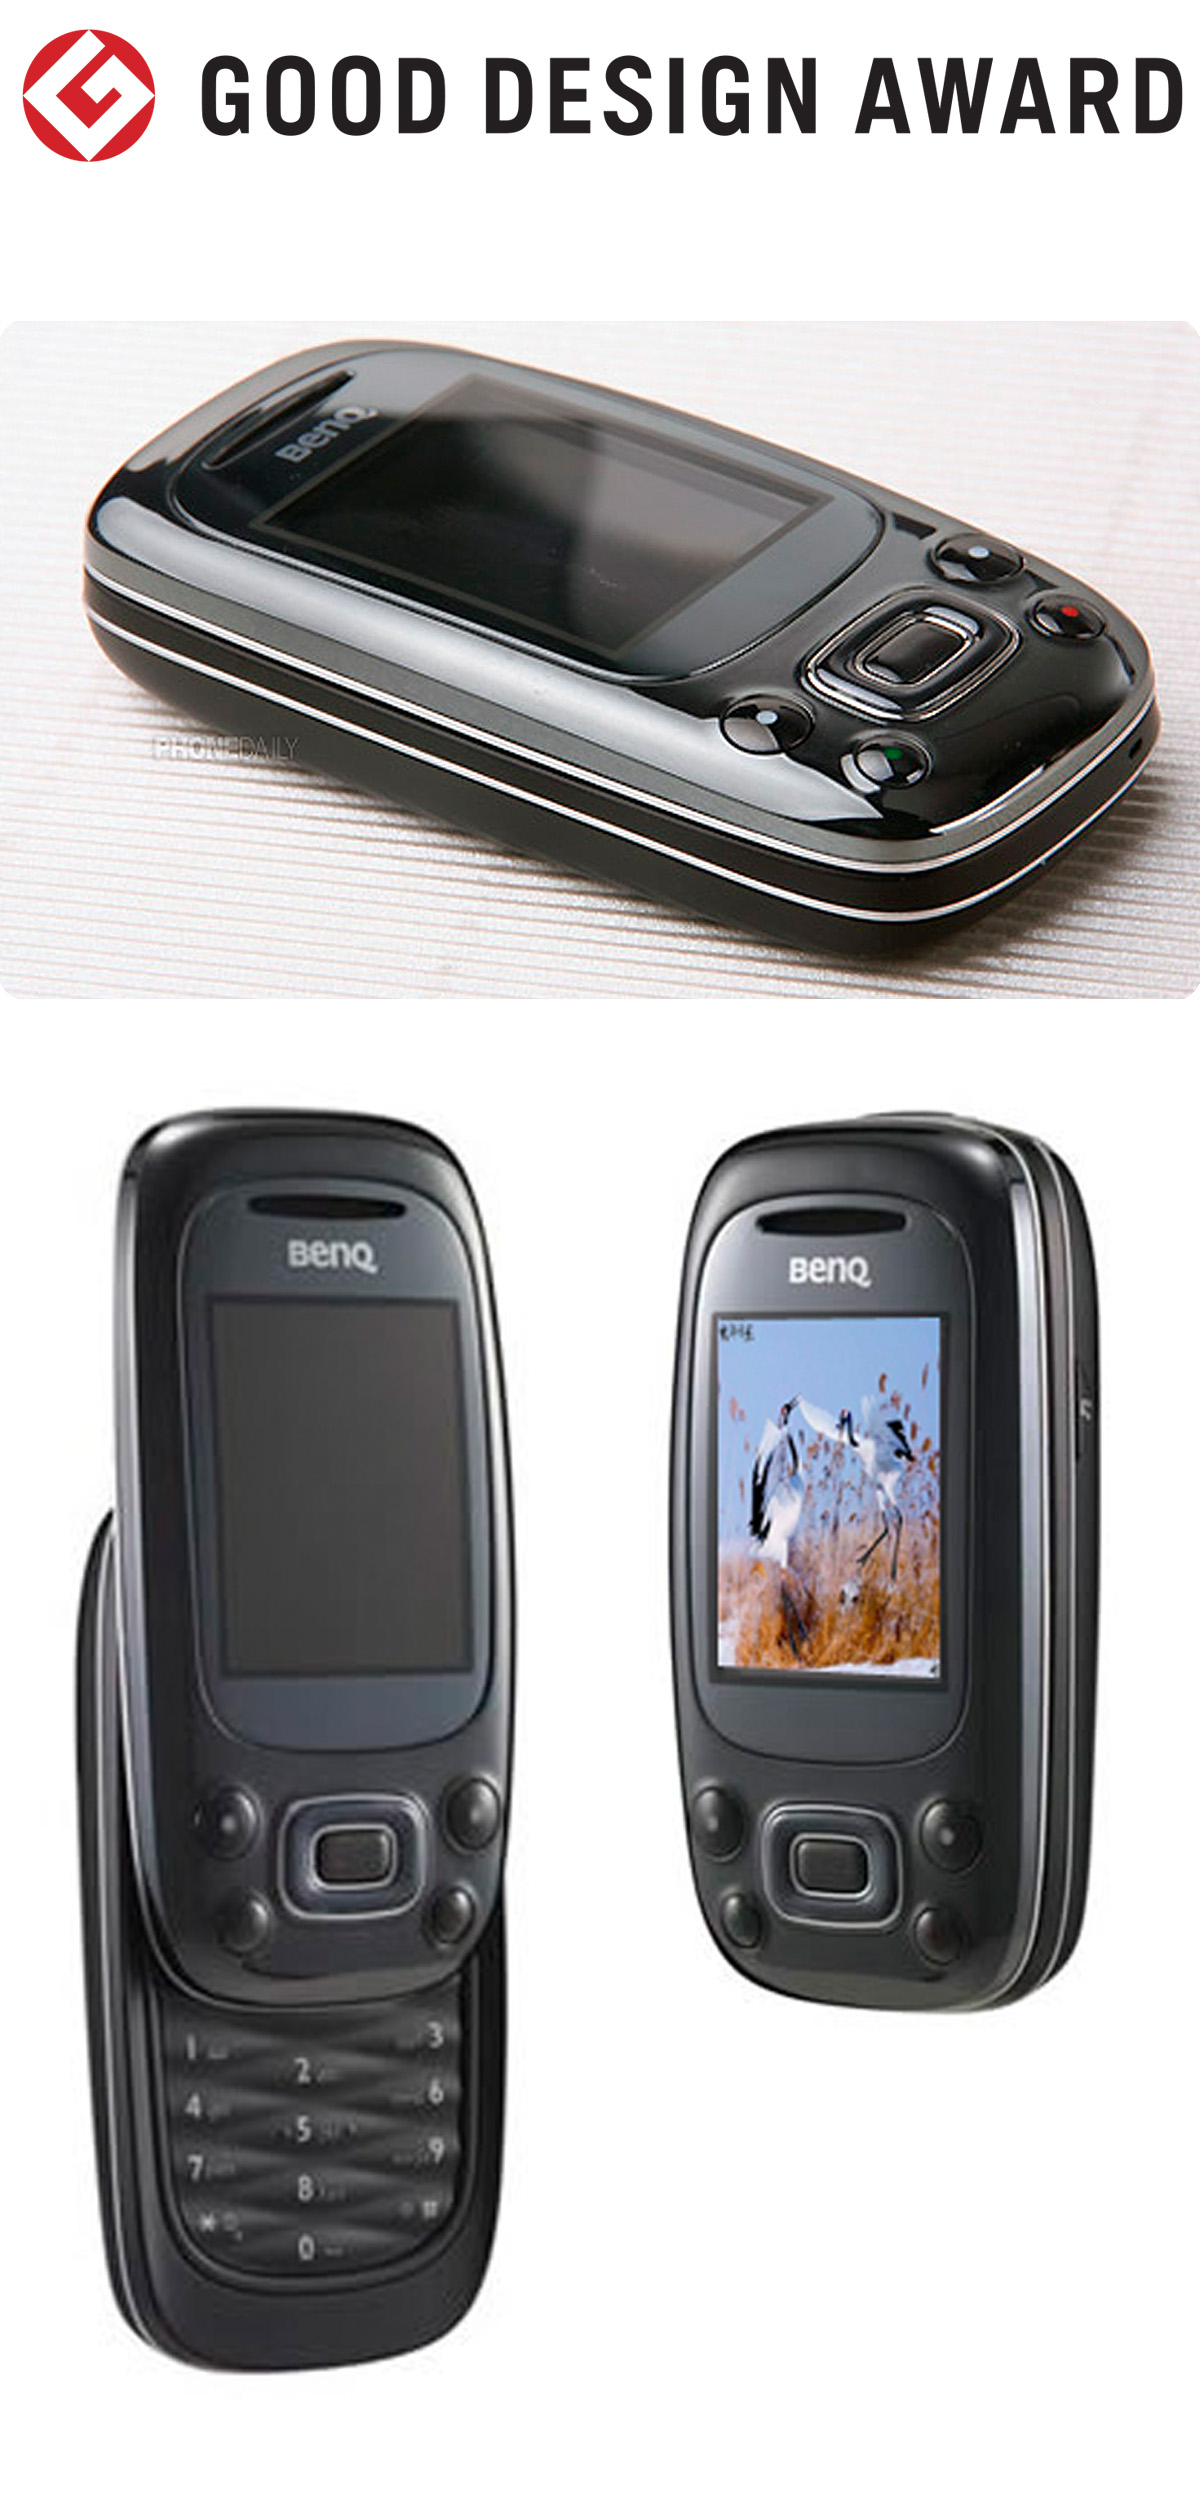 【日本】明基BenQ手机T33获颁2007年度G-Mark设计大奖（GOOD DESIGN AWARD 2007）